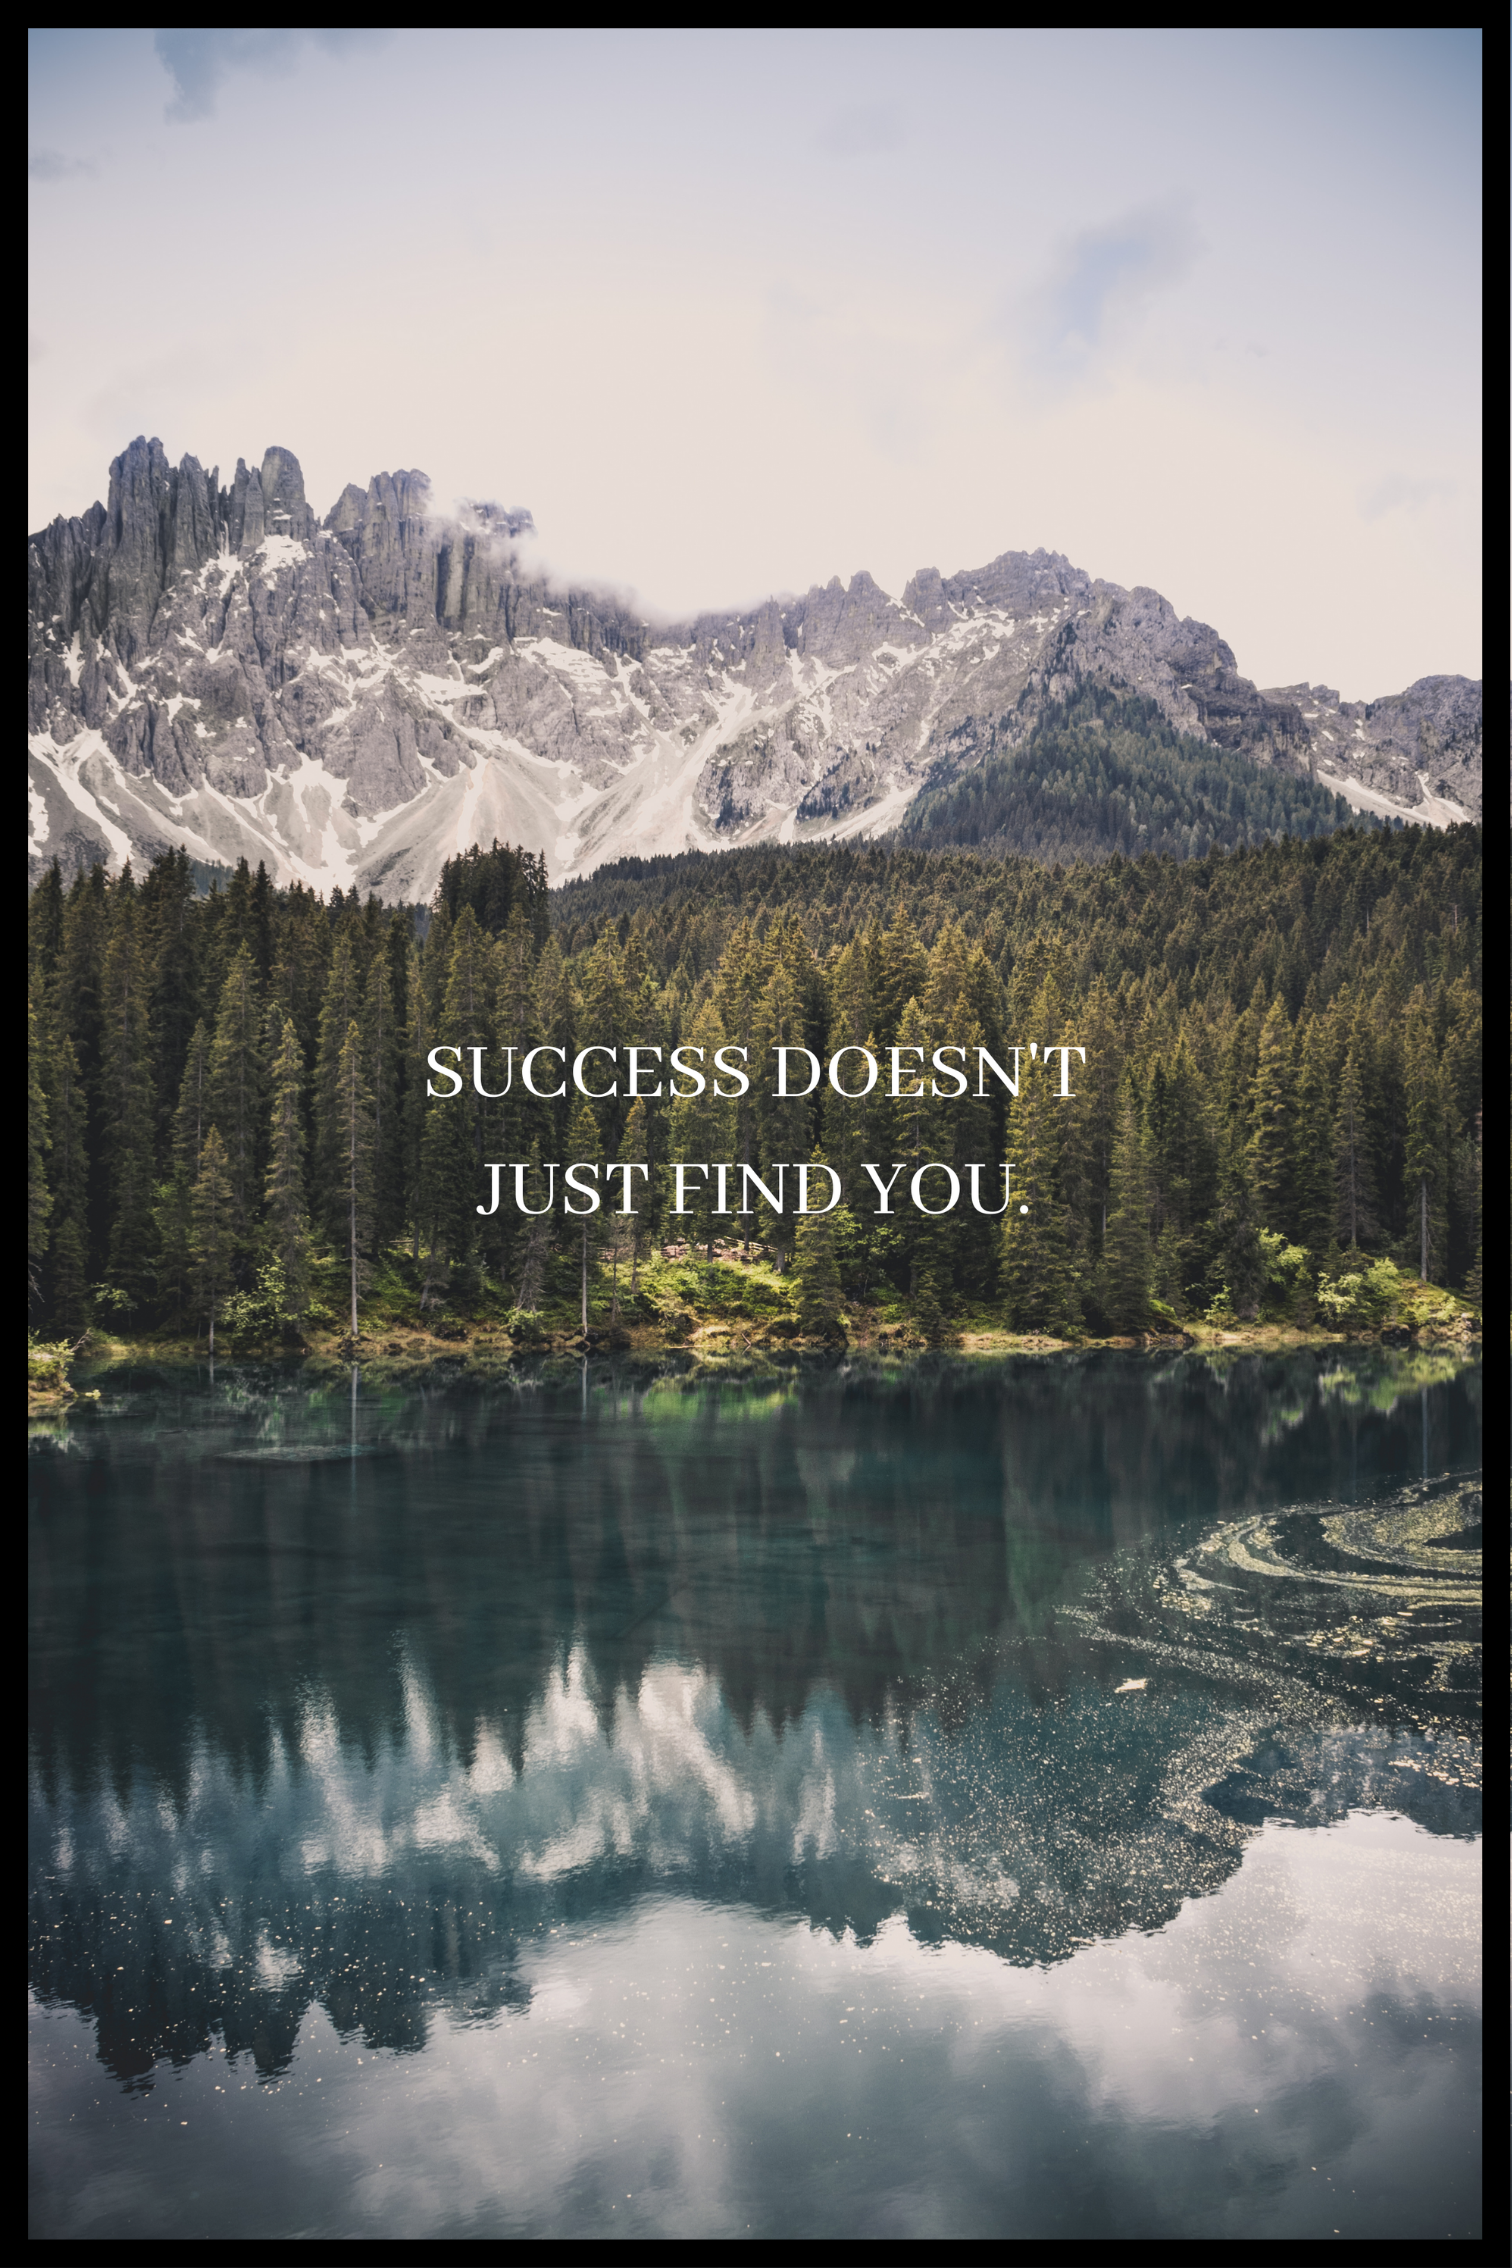 Framgång hittar inte bara din affisch